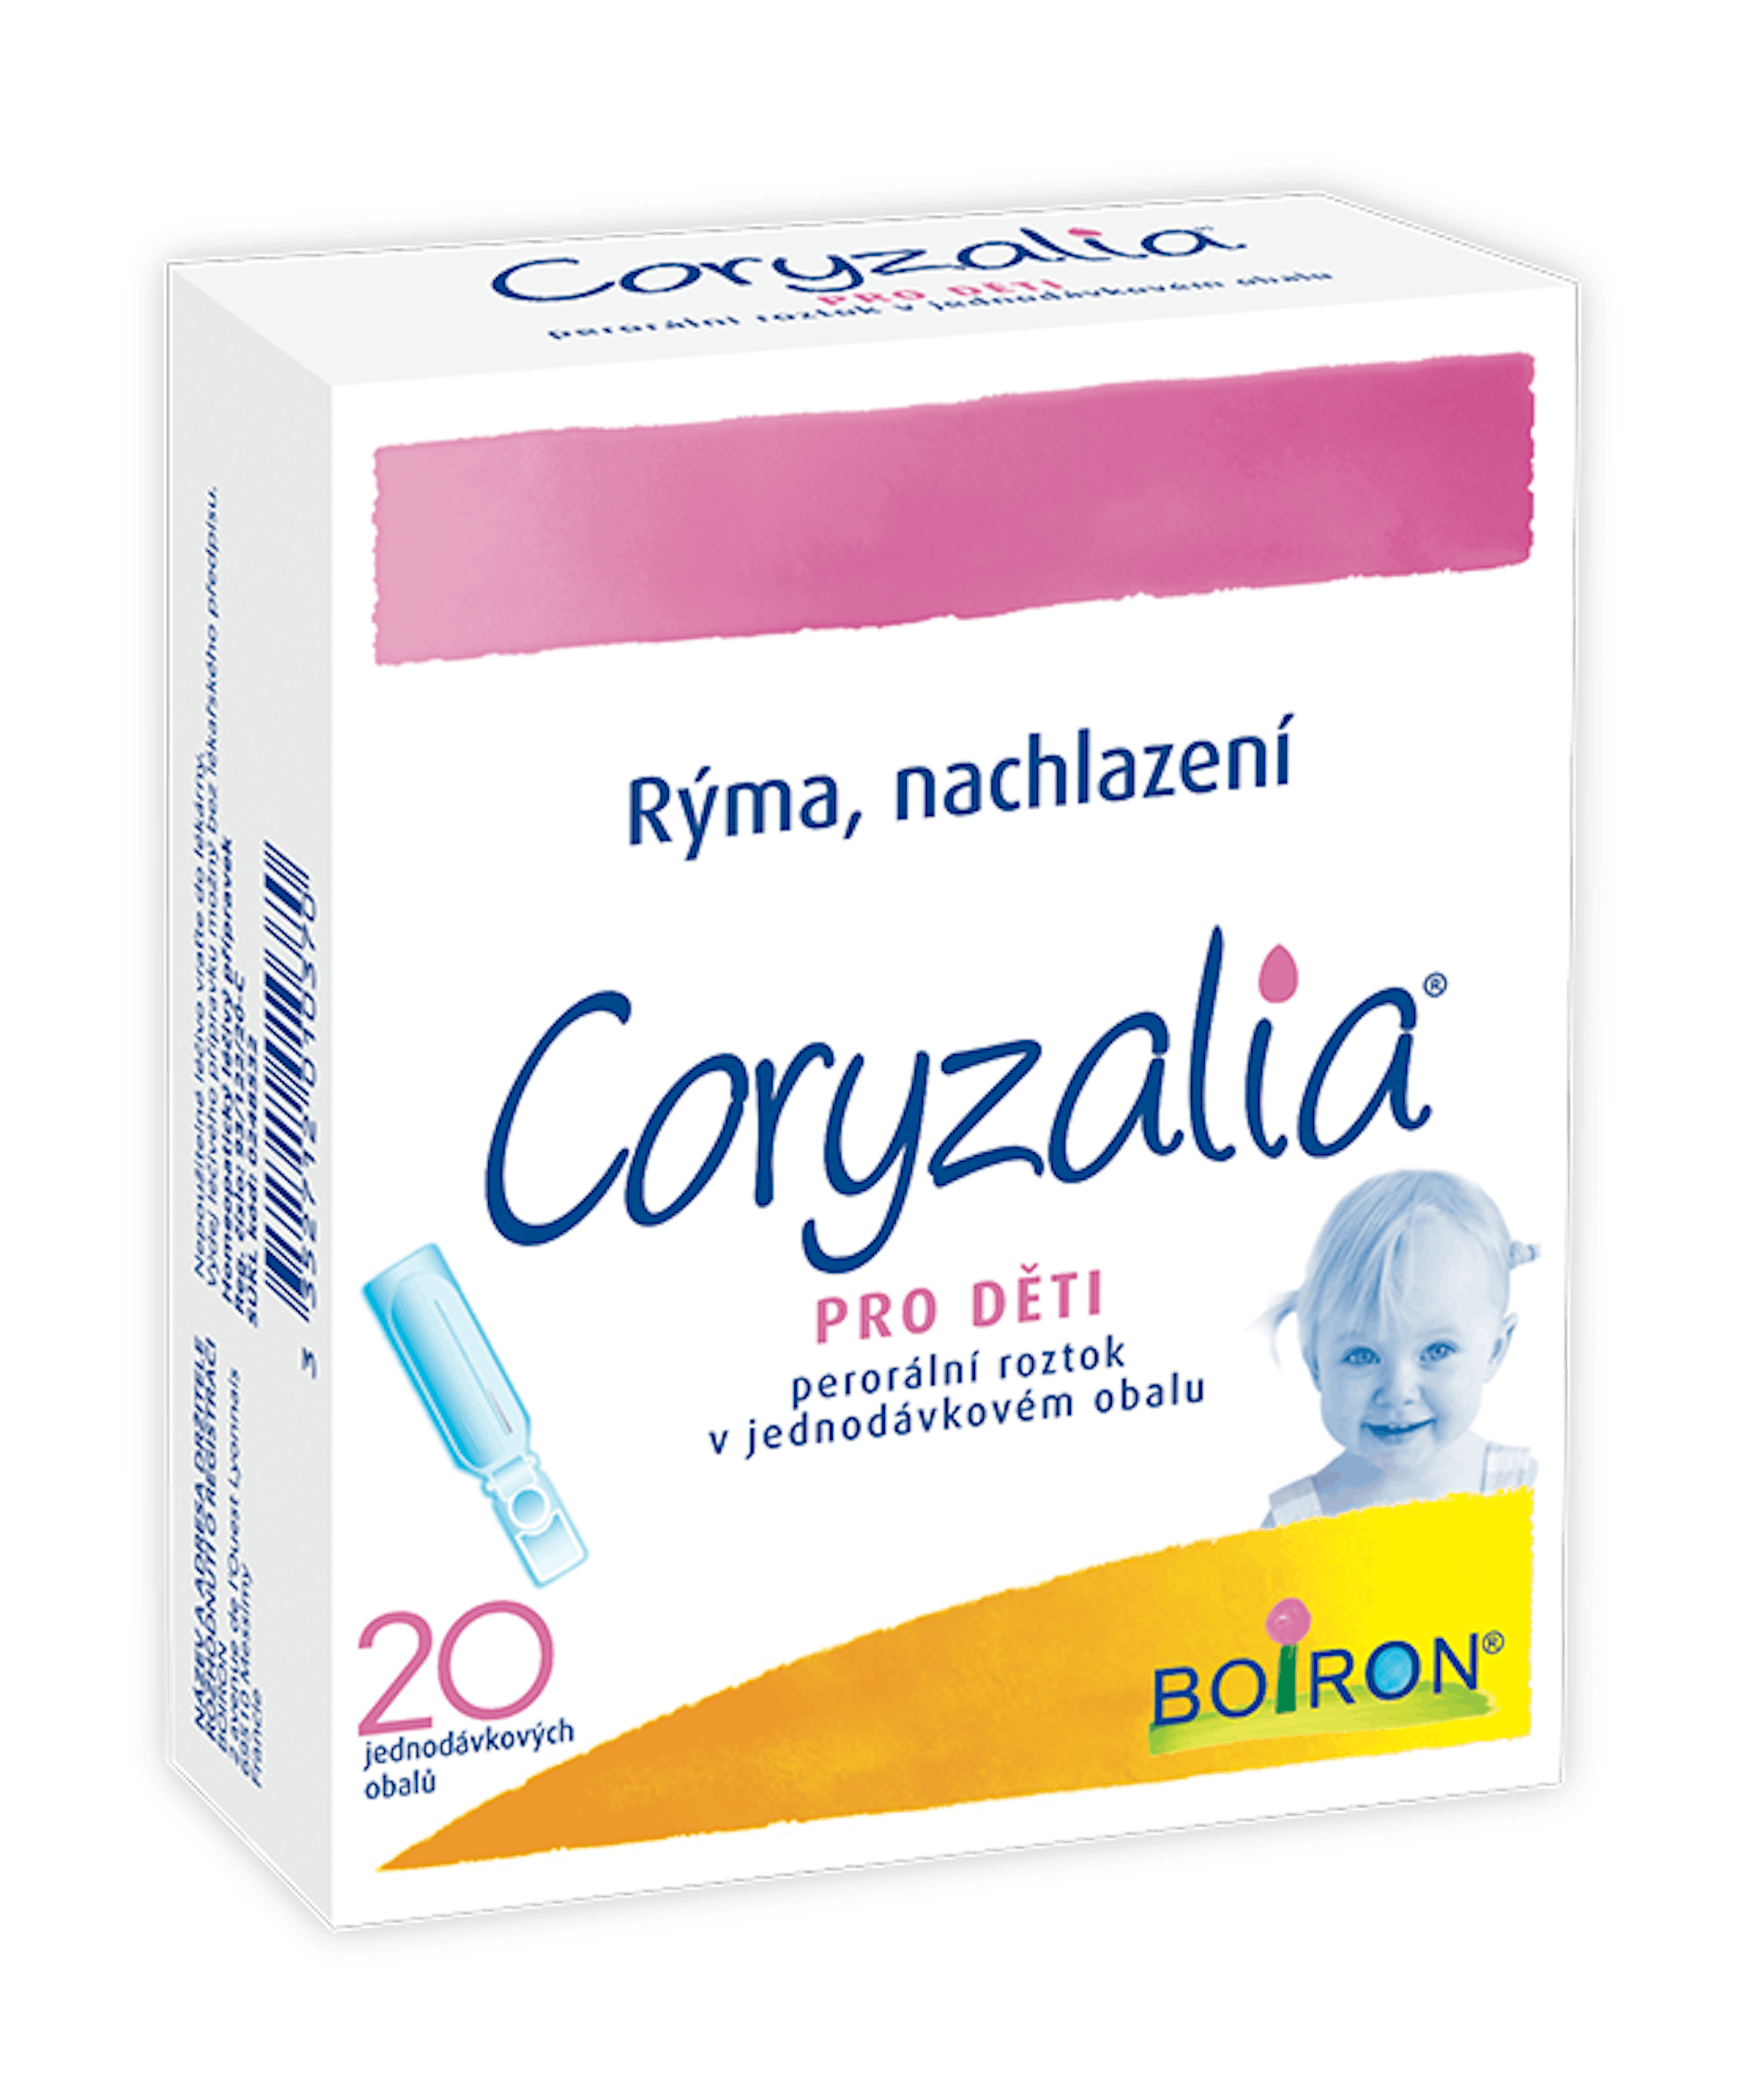 Coryzalia pro deti, homeopatický léčivý přípravek rýma, nachlazení, výtok z nosu, kýchání, pocit ucpaného nosu , slzení. 
Pro děti od narození do 12 let.
